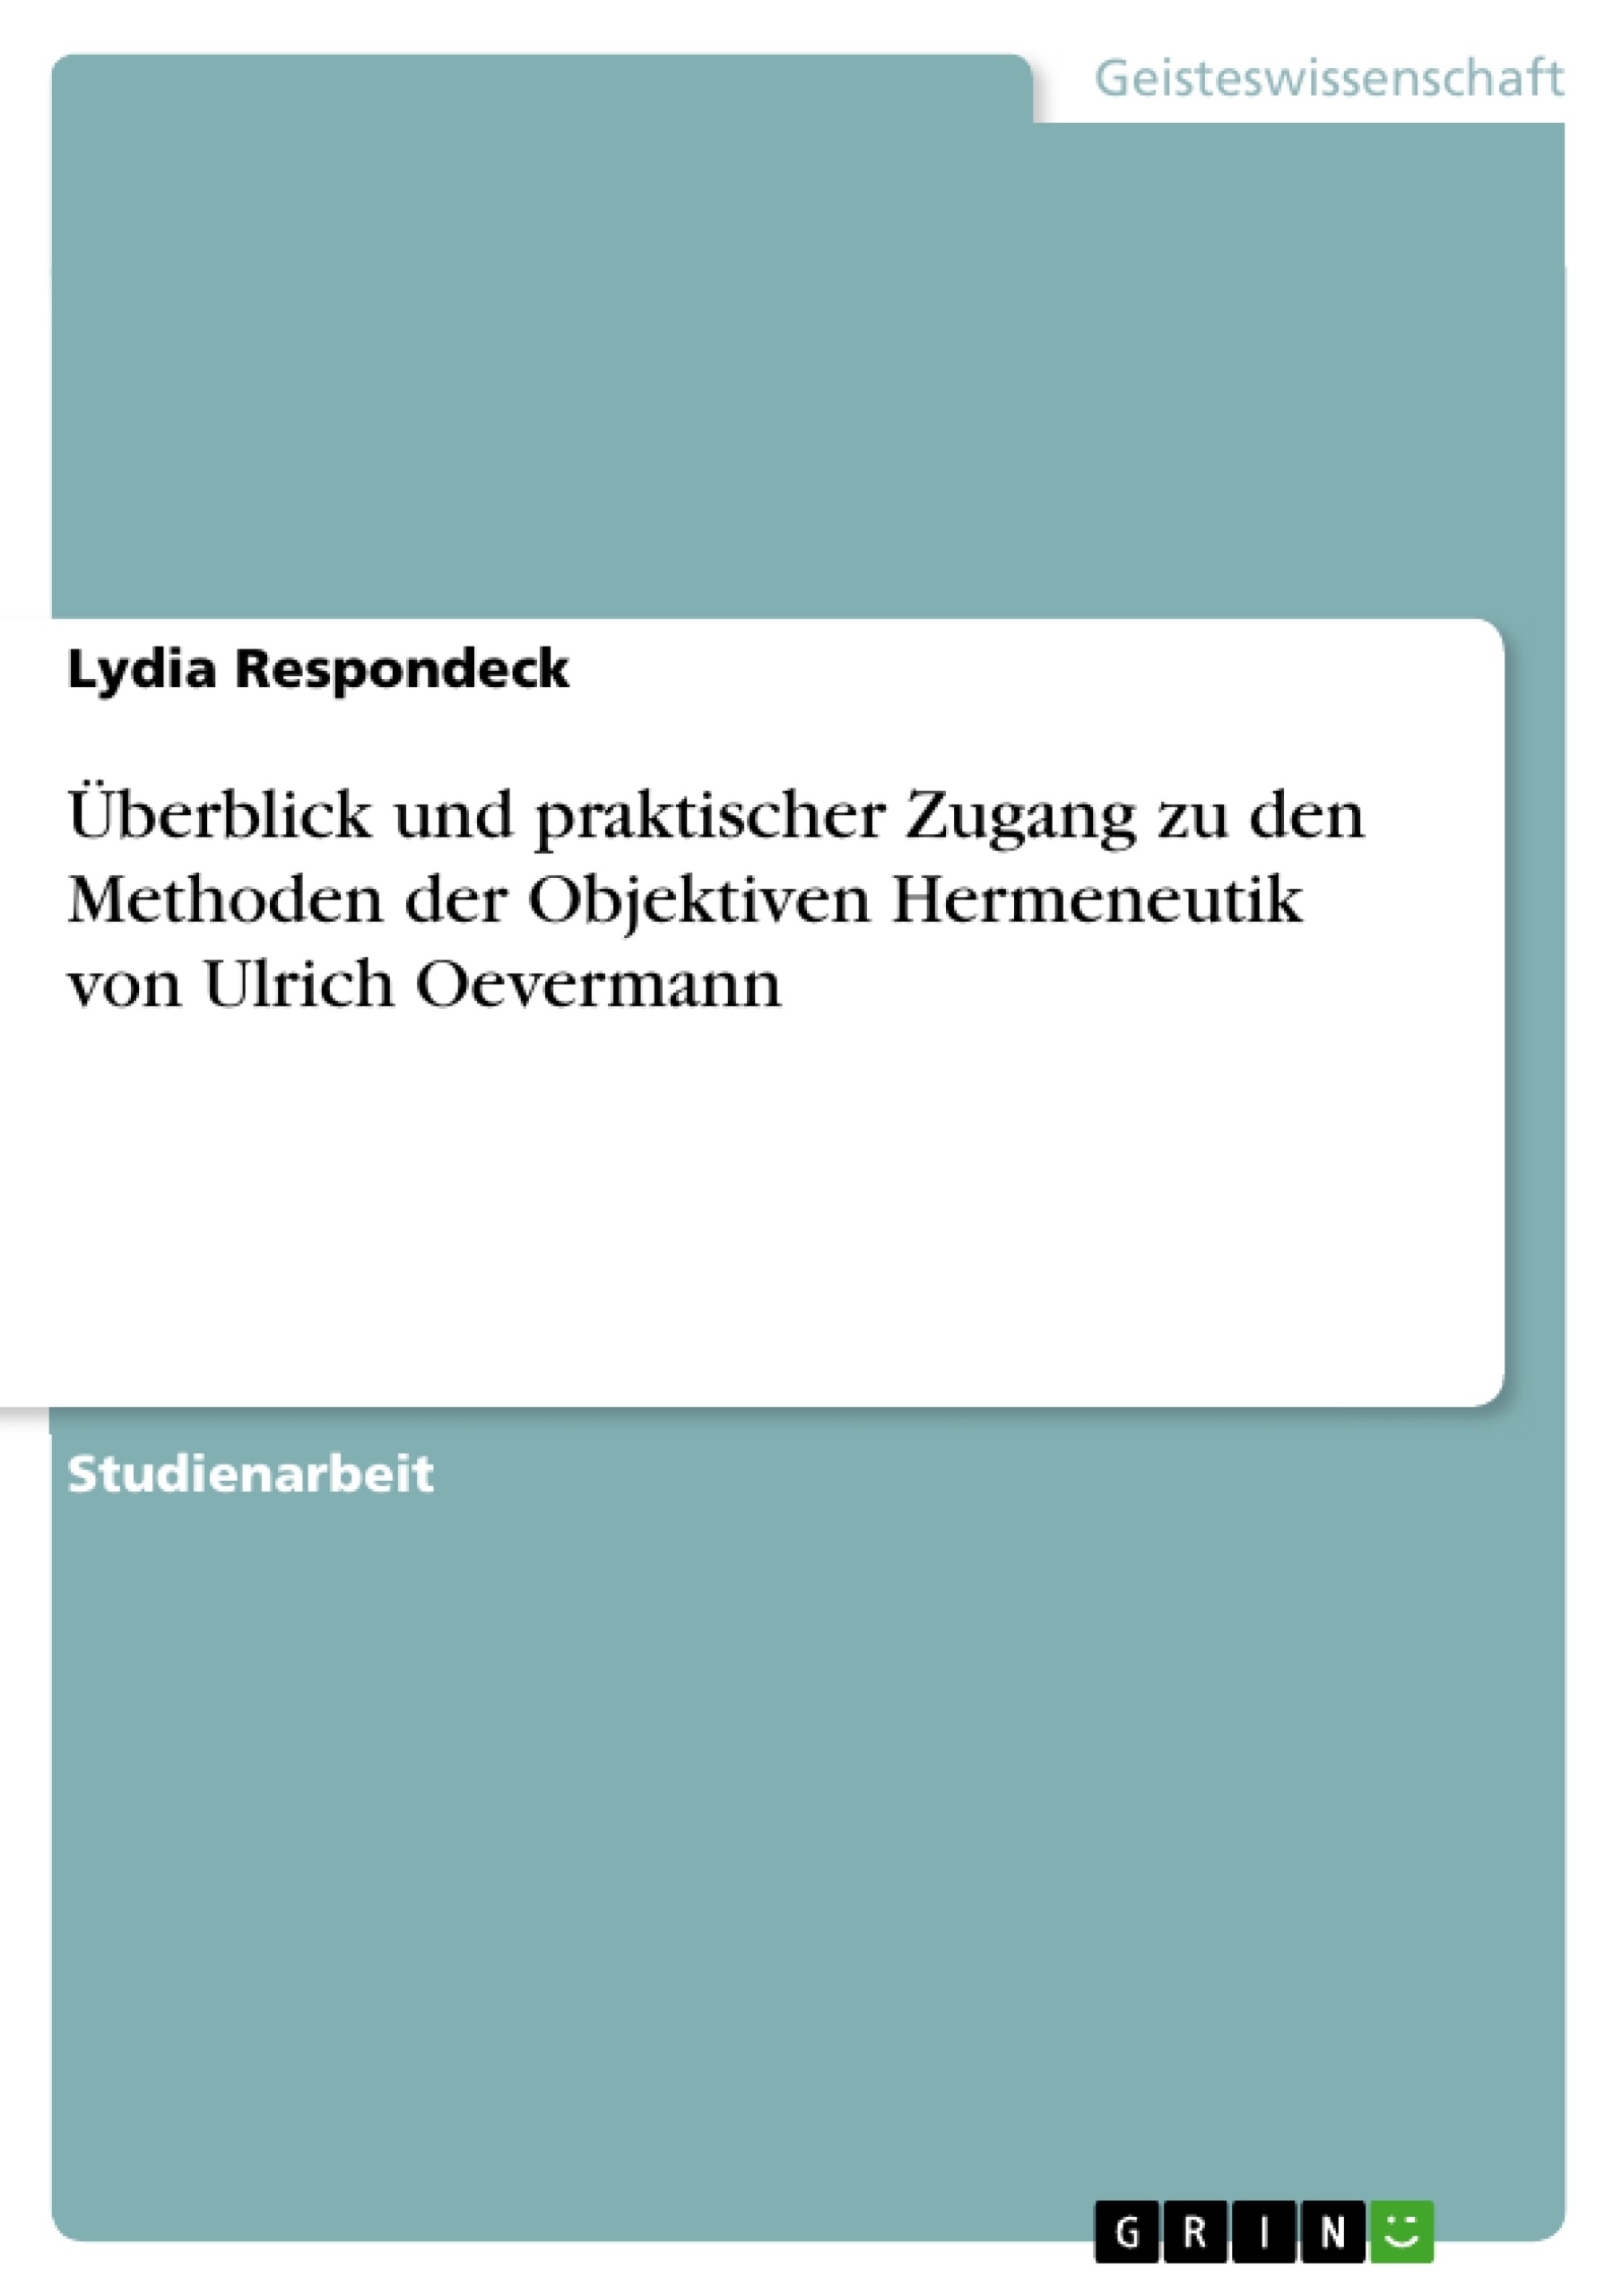 Title: Überblick und praktischer Zugang zu den Methoden der Objektiven Hermeneutik von Ulrich Oevermann